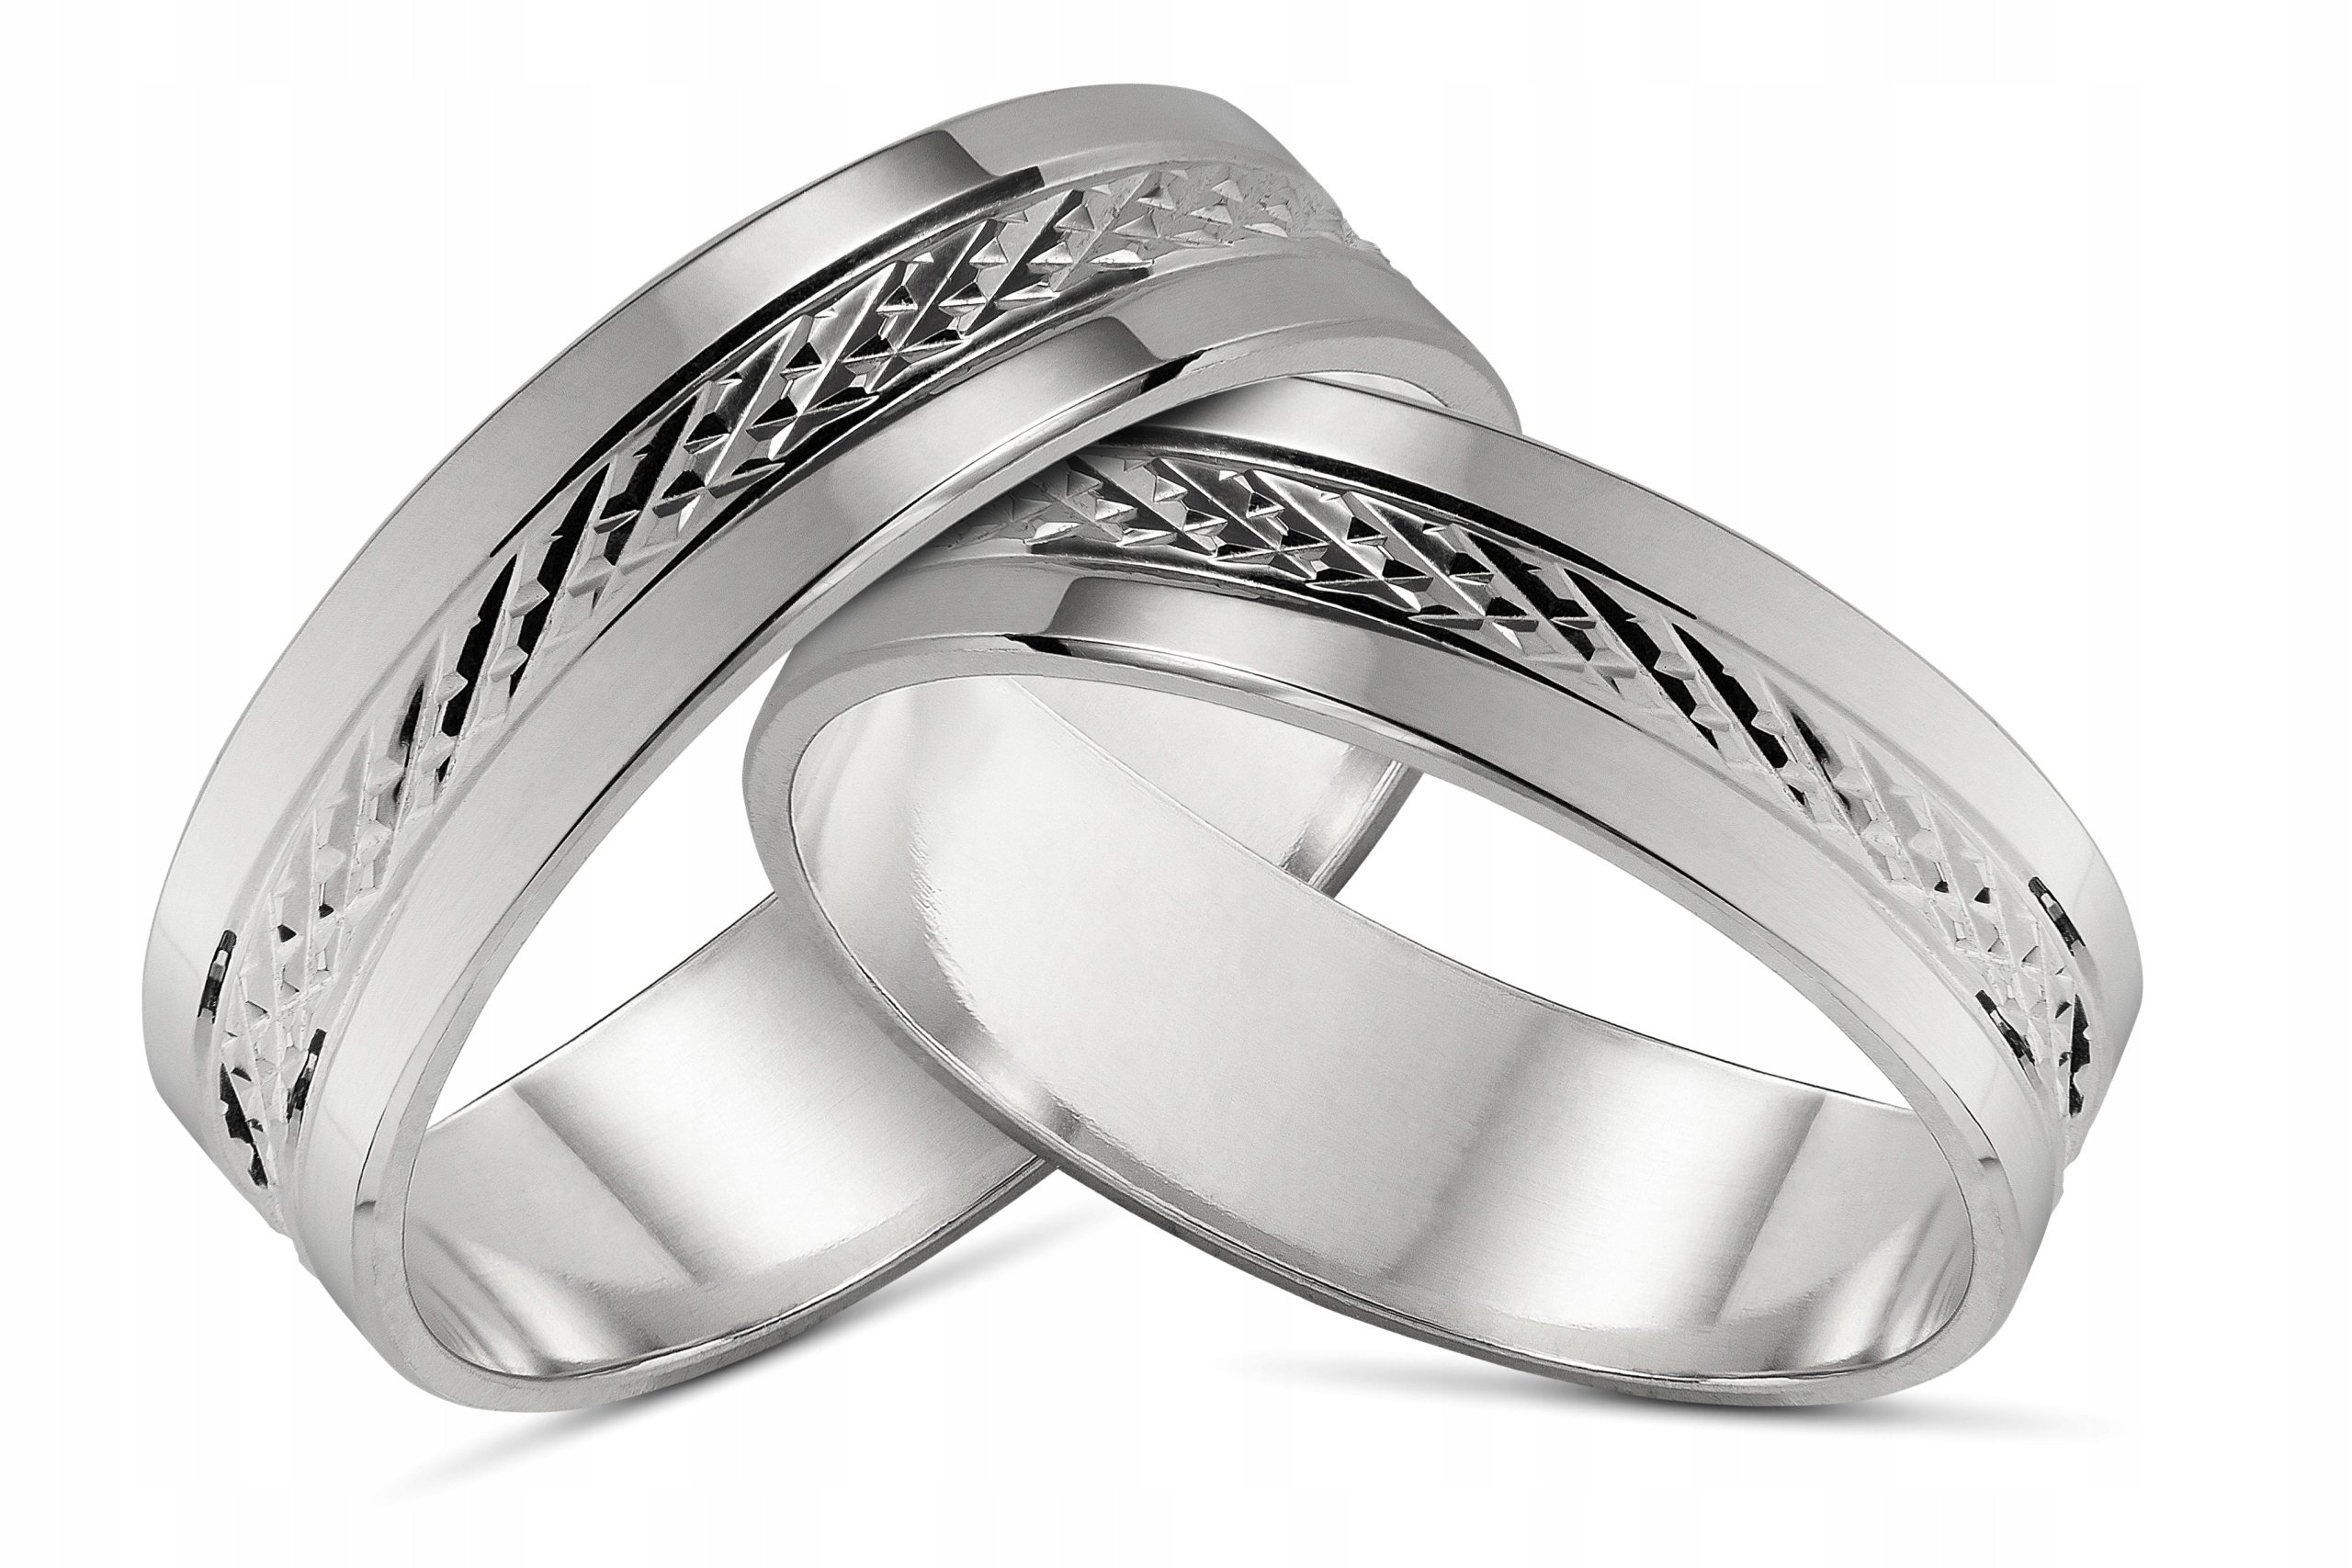 Можно ли серебряное обручальное кольцо. Парные кольца SEREBRO 925. SEREBRO 925 Kolca обручальные. Парные кольца Соколов серебро.